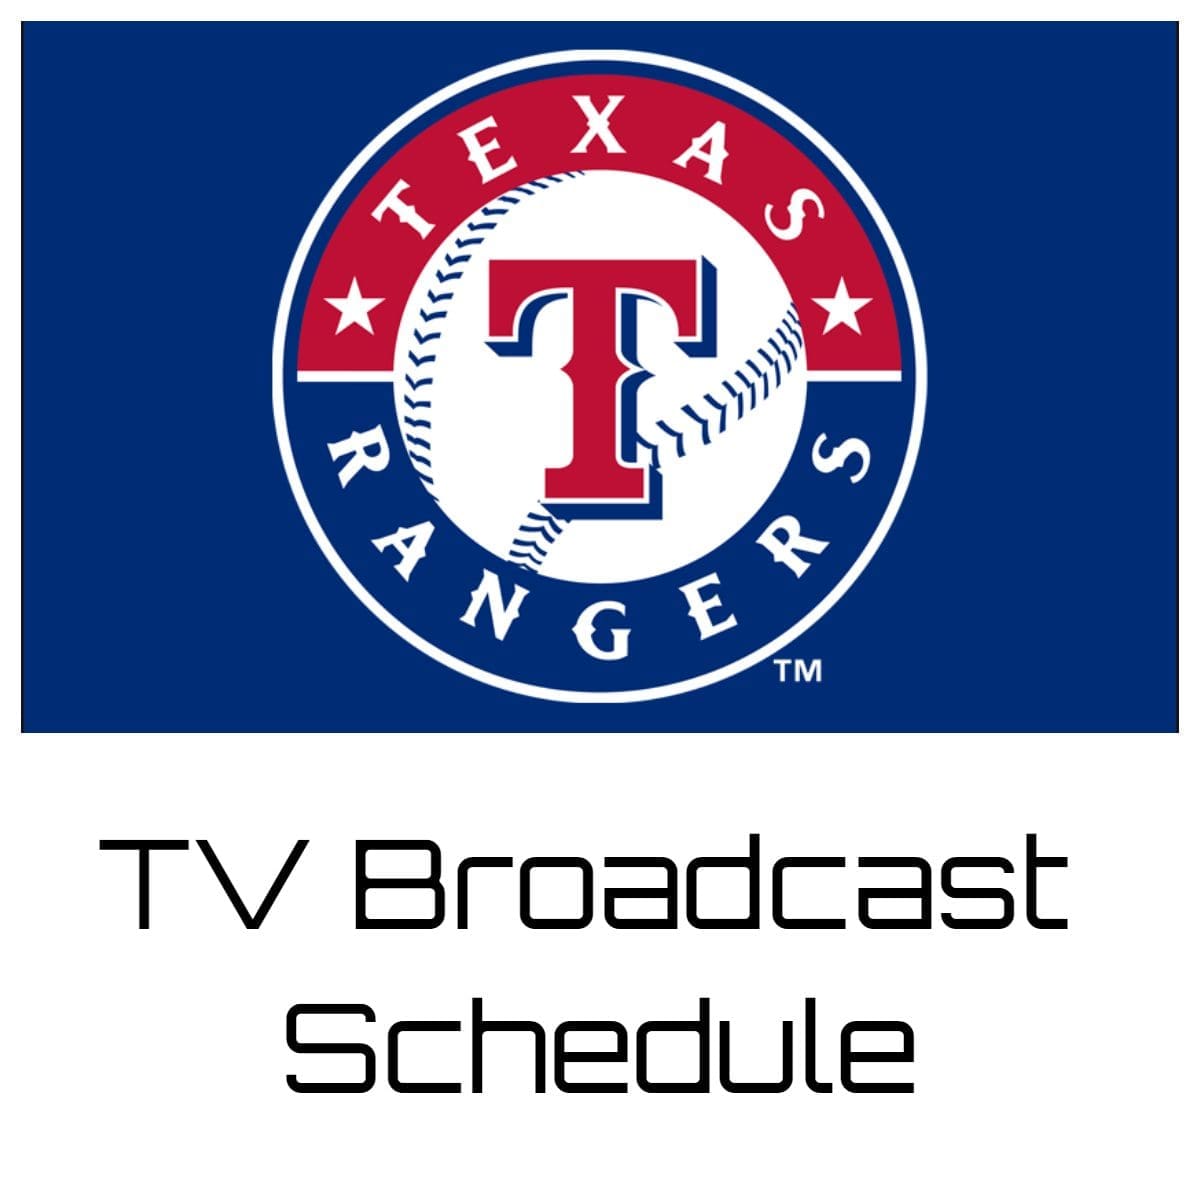 Texas Rangers TV Broadcast Schedule